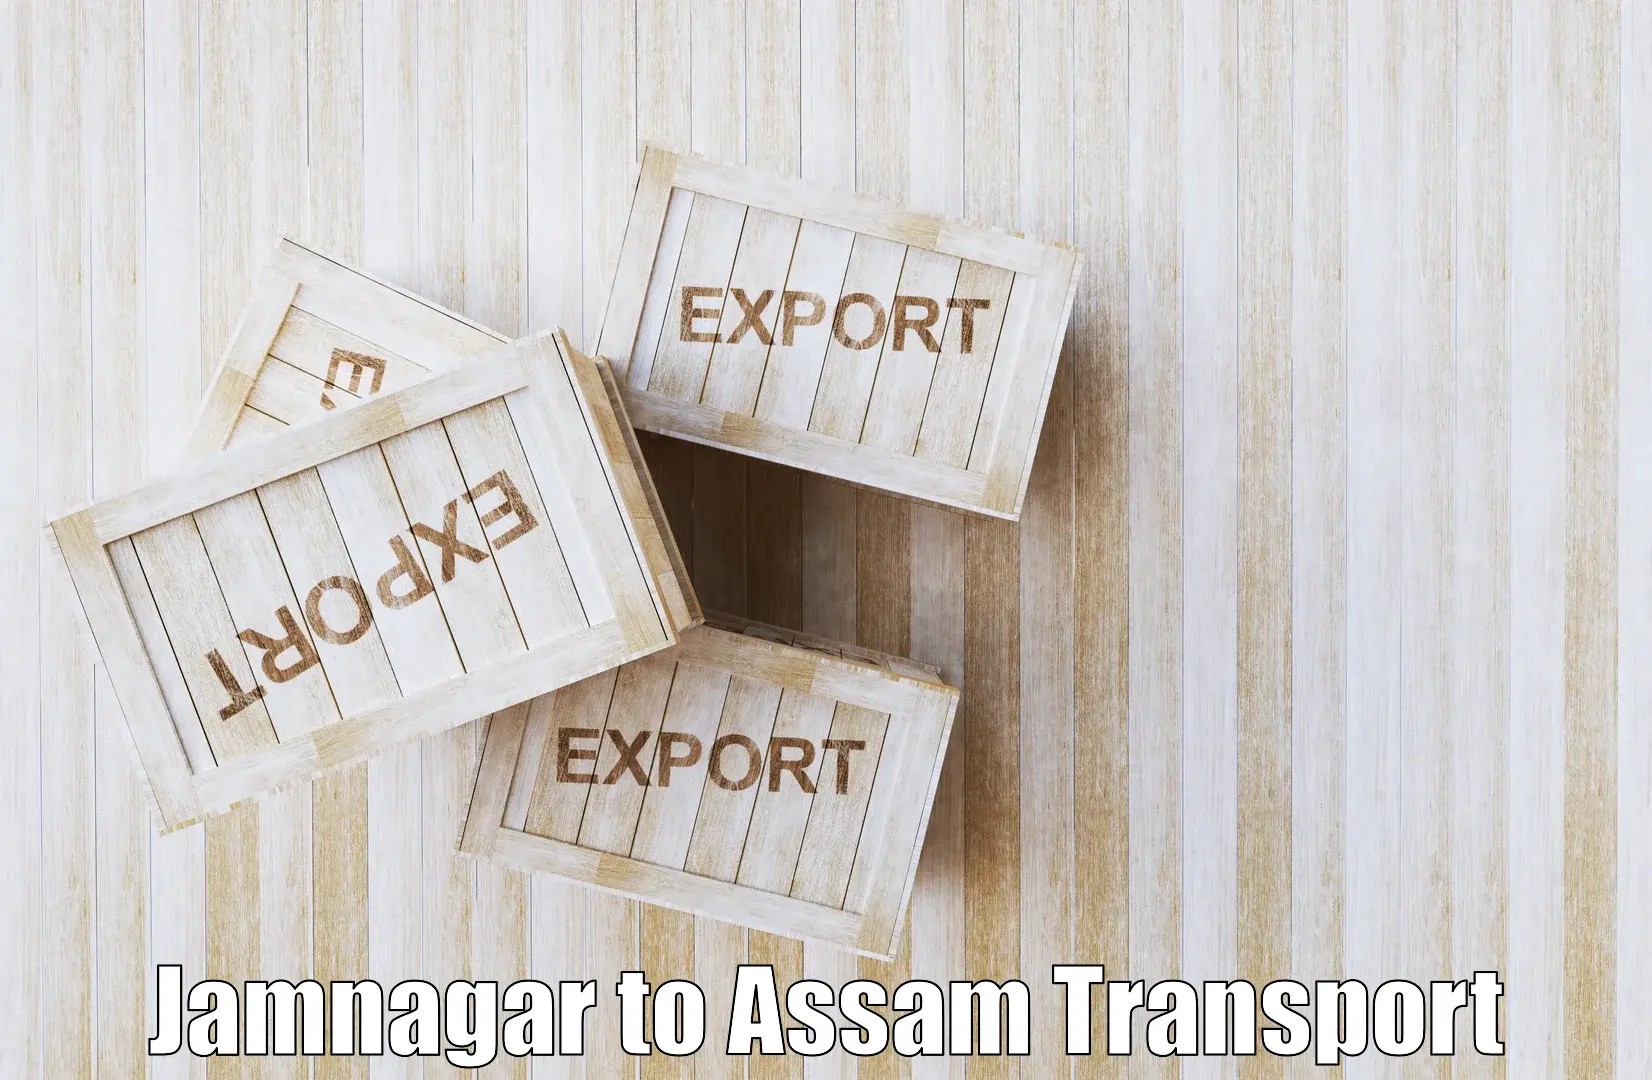 Nearest transport service Jamnagar to Rangia